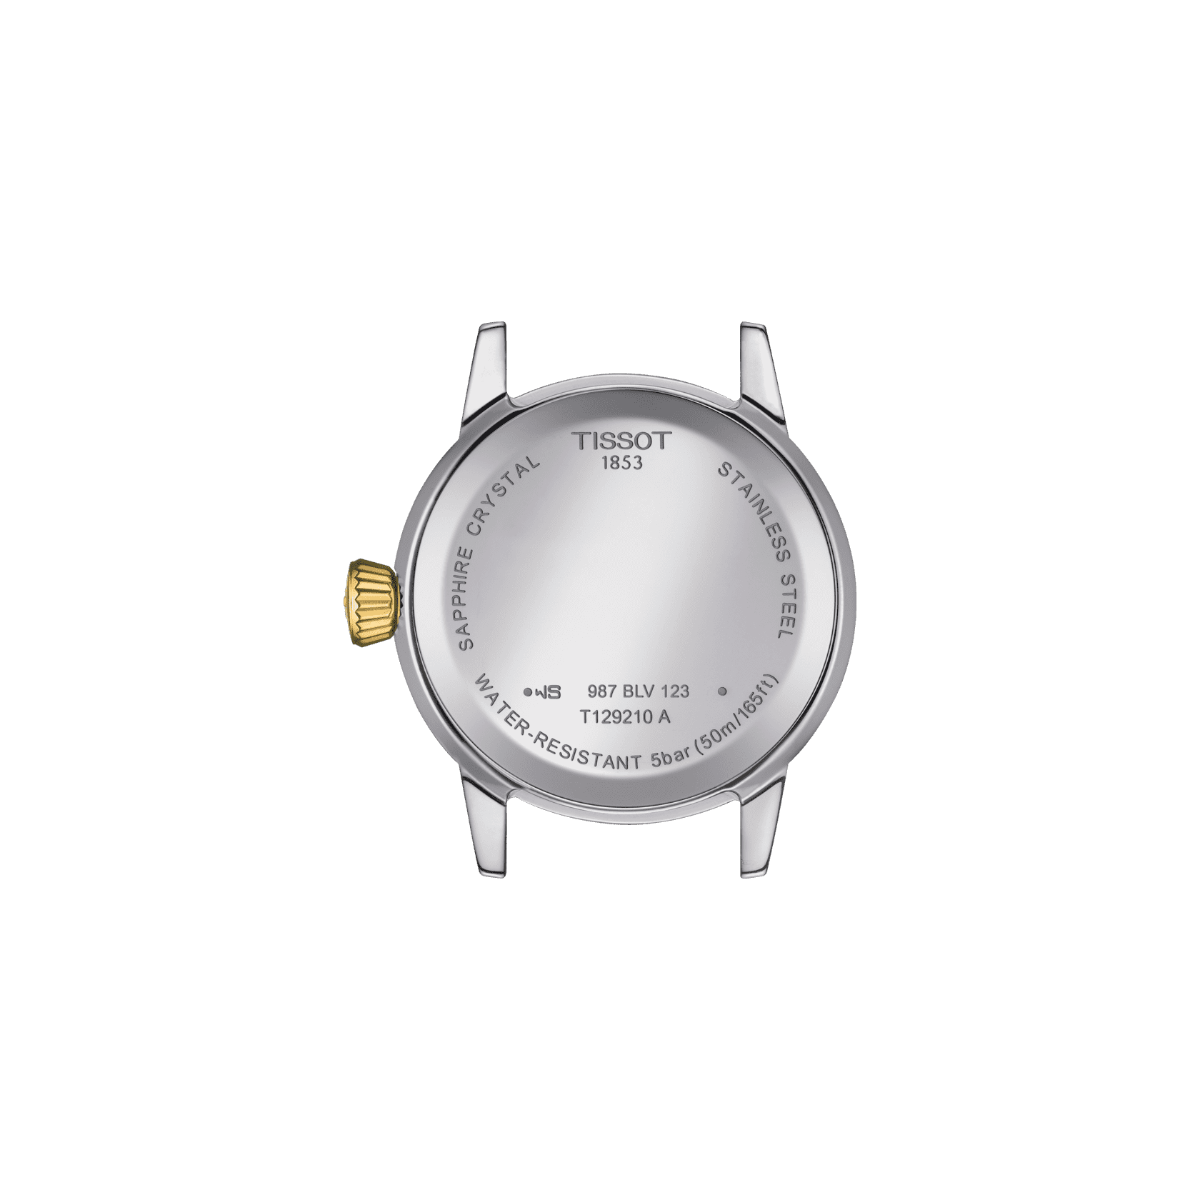 Tissot orologio Classic Dream Lady 28mm avorio quarzo acciaio finitura PVD oro giallo T129.210.22.263.00 - Gioielleria Capodagli